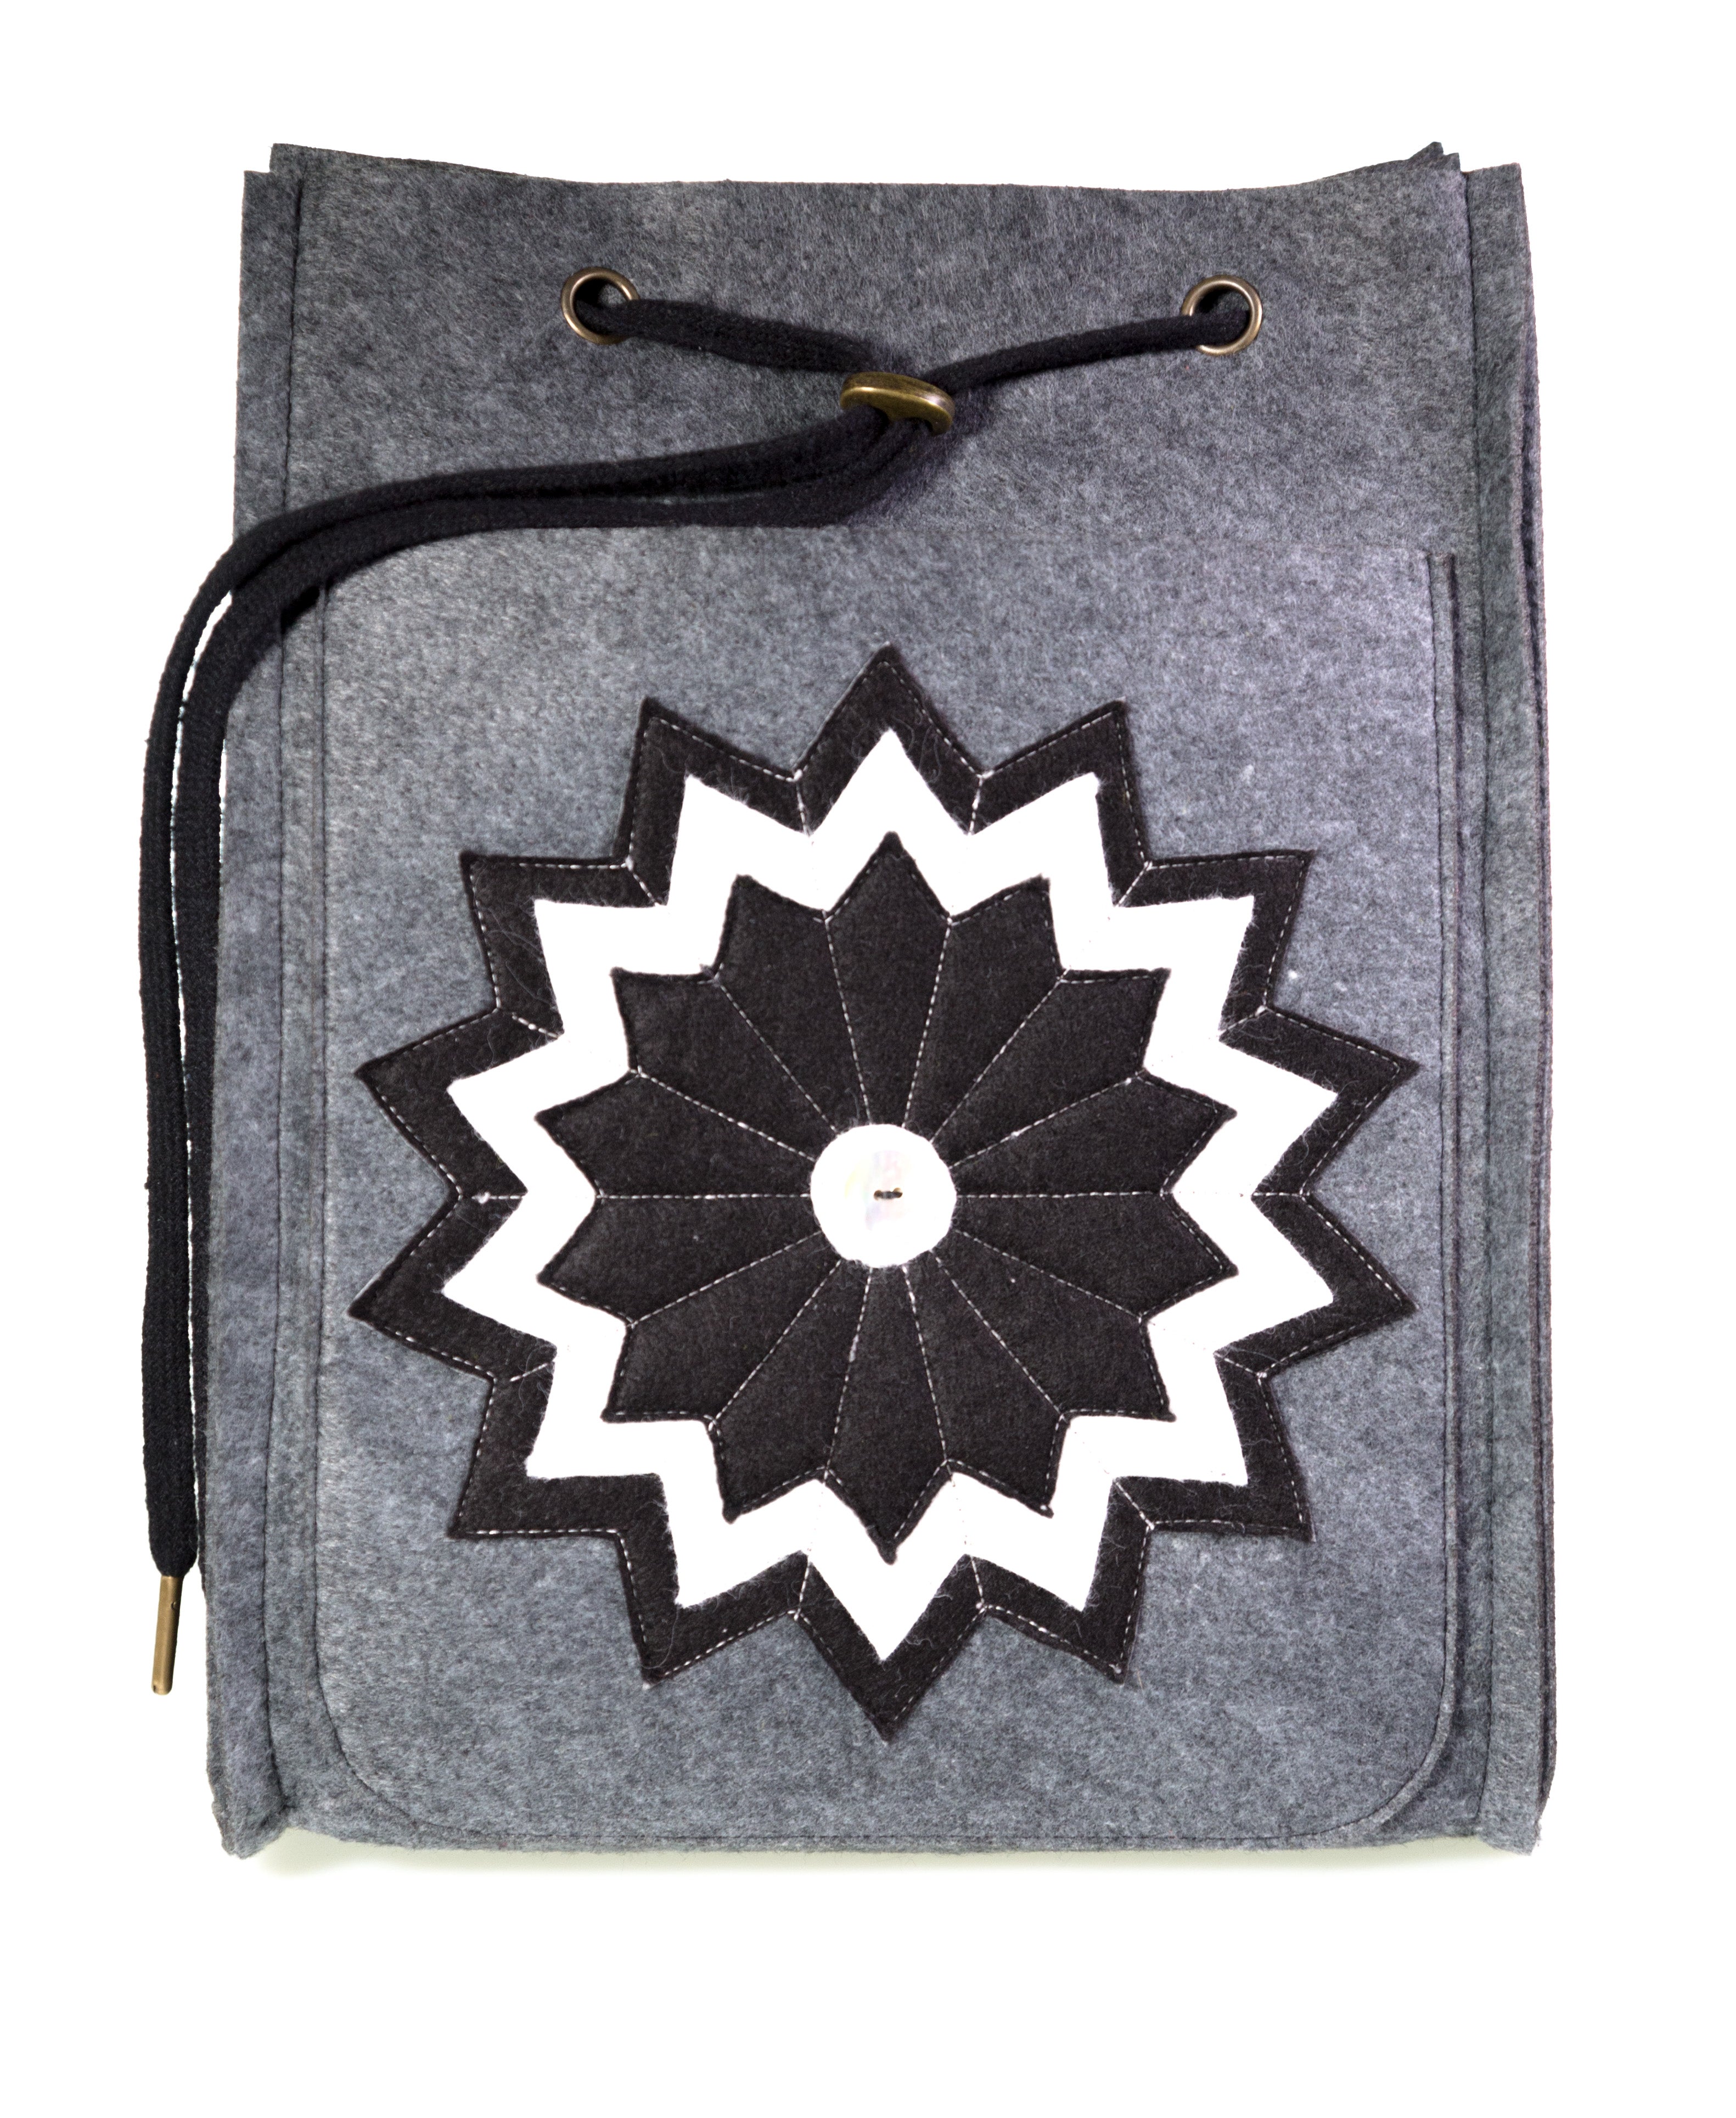 Amalia Backpack Kit WonderFil Europe